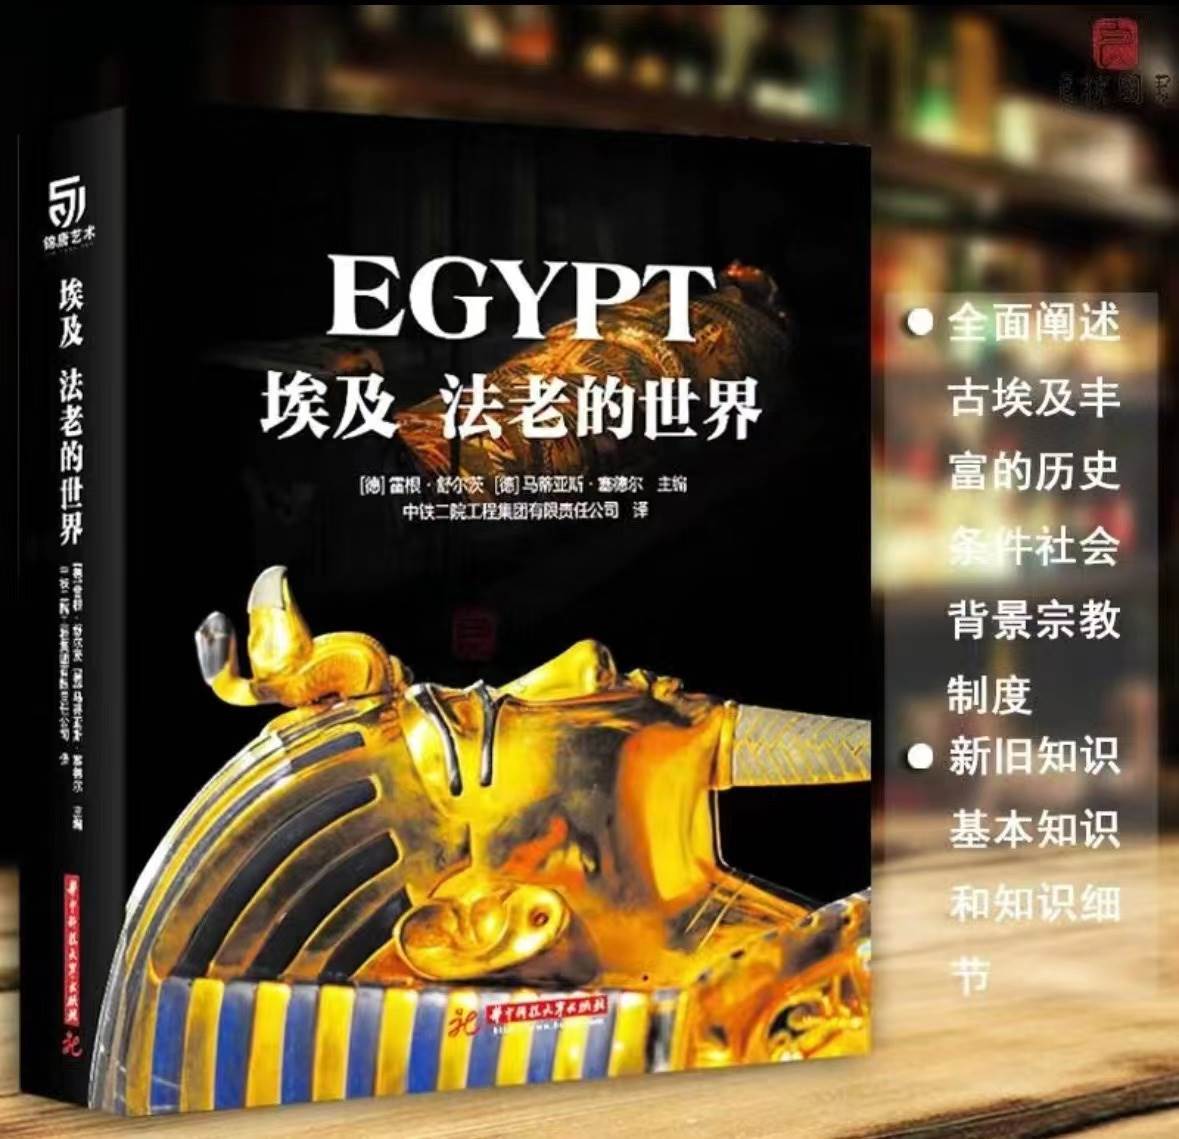 埃及 法老的世界 雷根舒尔茨从历史条件 JST 社会背景 宗教制度等介绍埃及文化和新旧知识金字塔狮身人面像起源华中科技大学出版社